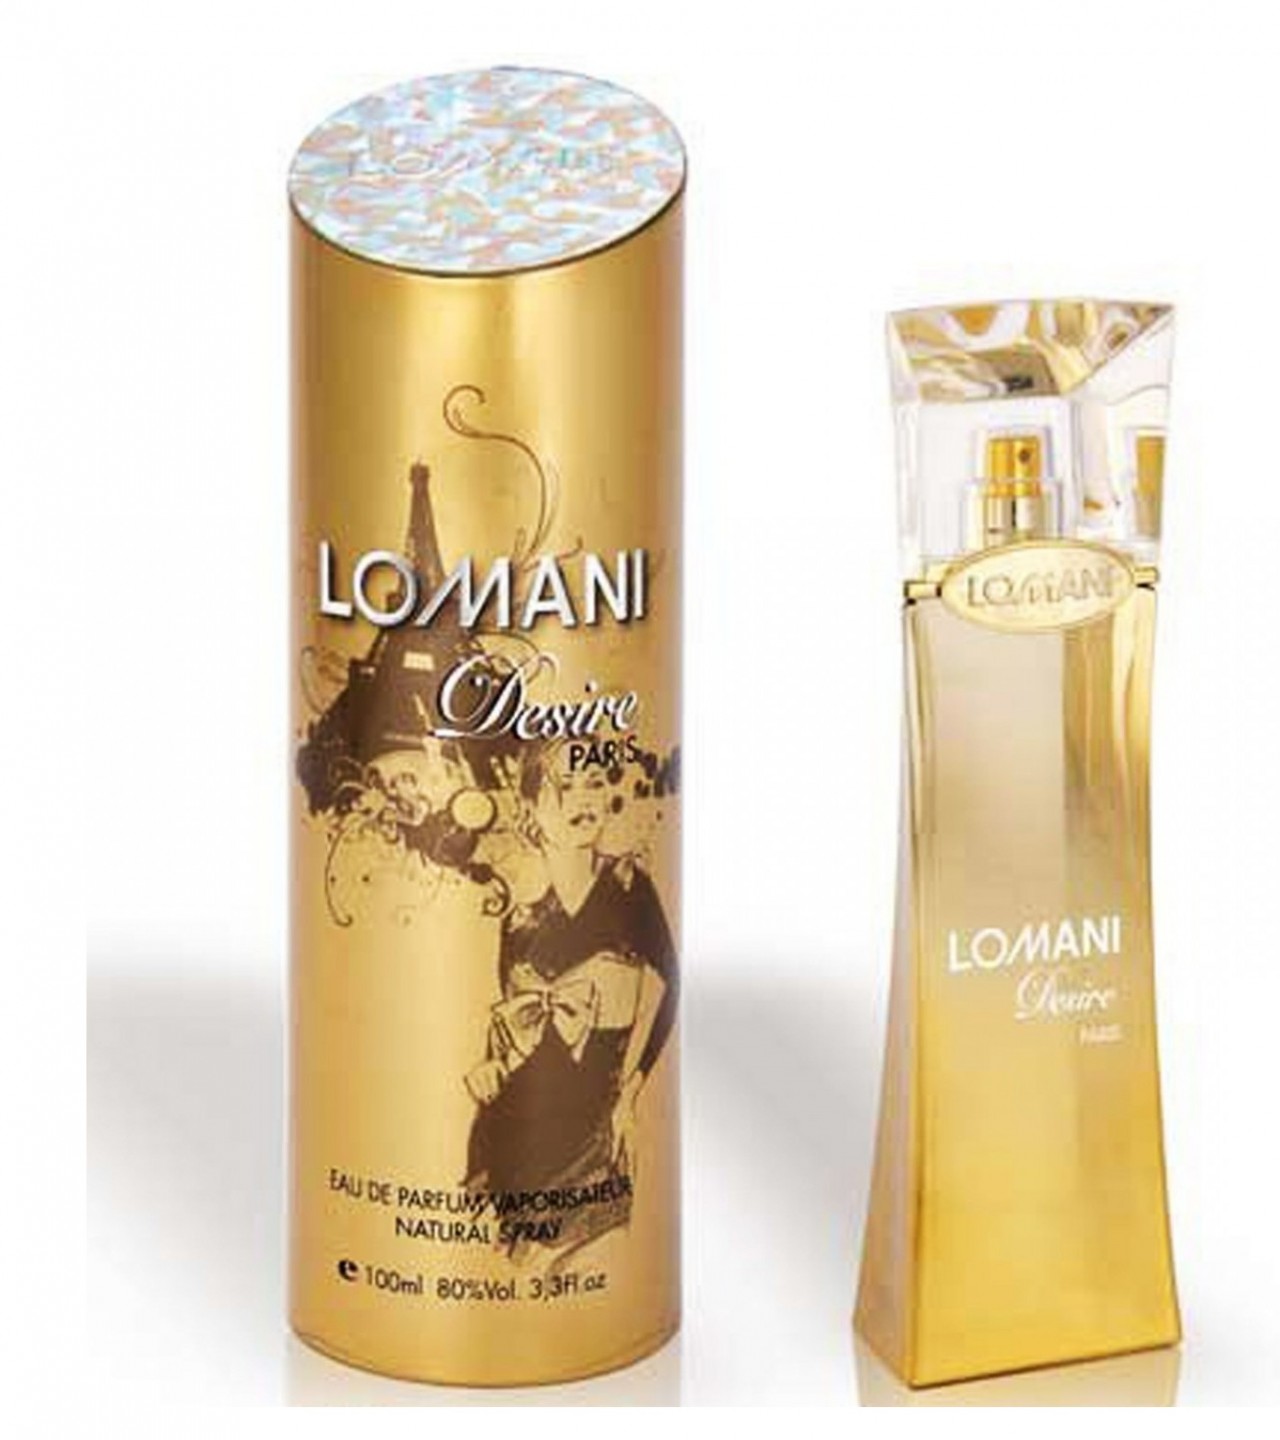 Lomani Desire Perfume For Women - Eau De Parfum - 100 ml